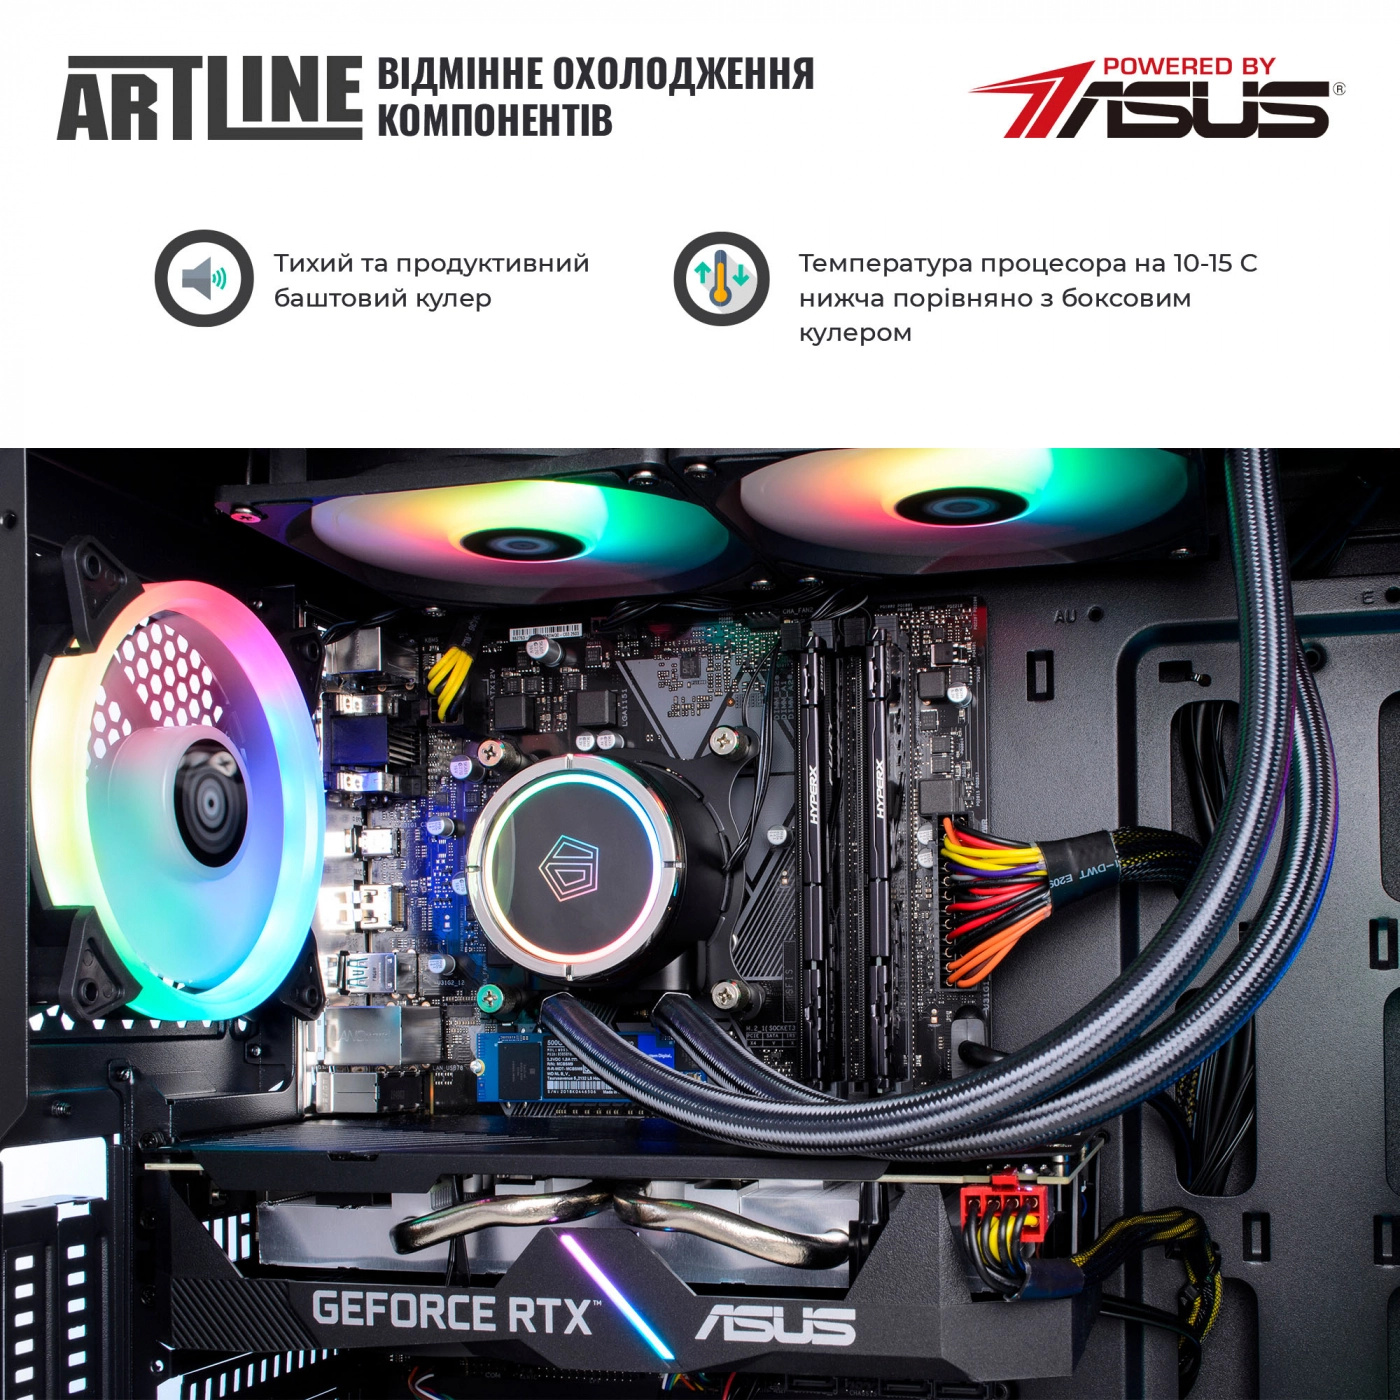 Купить Компьютер ARTLINE Gaming X75v25 - фото 3